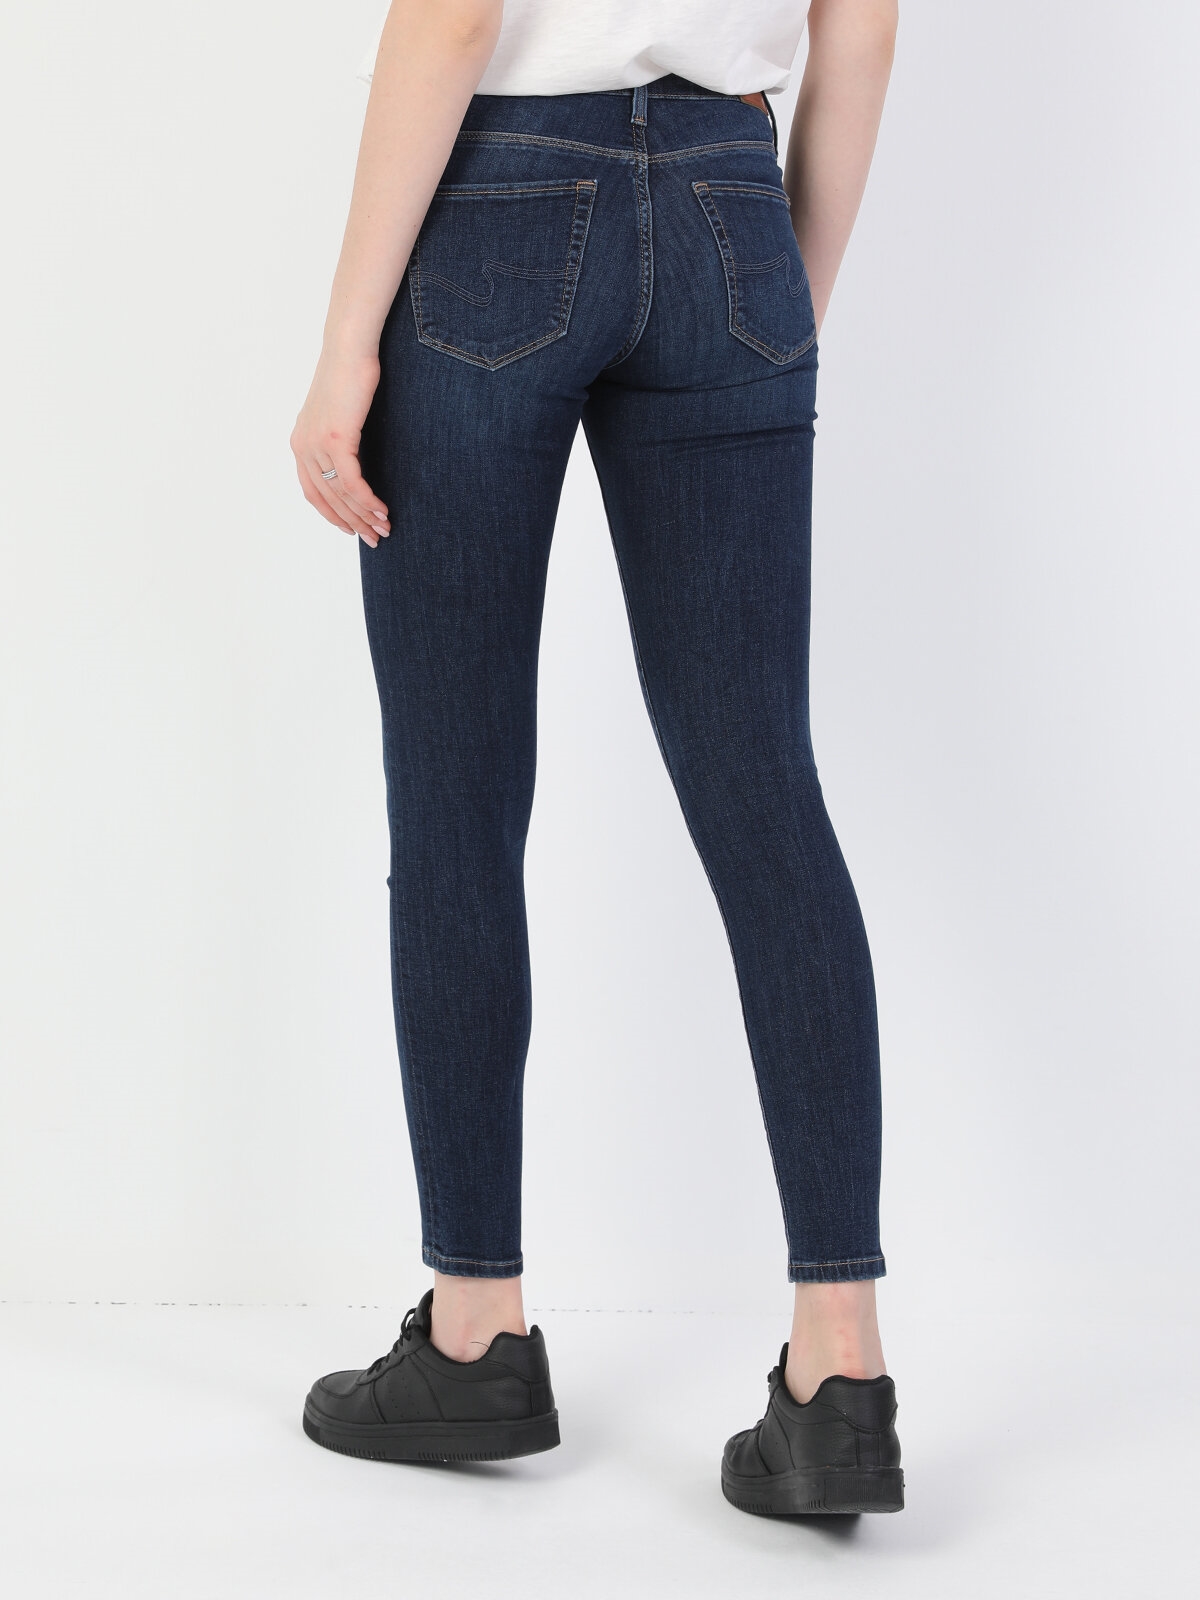 Afișați detalii pentru Pantaloni De Dama Albastru inchis Super Slim Fit 759 LARA